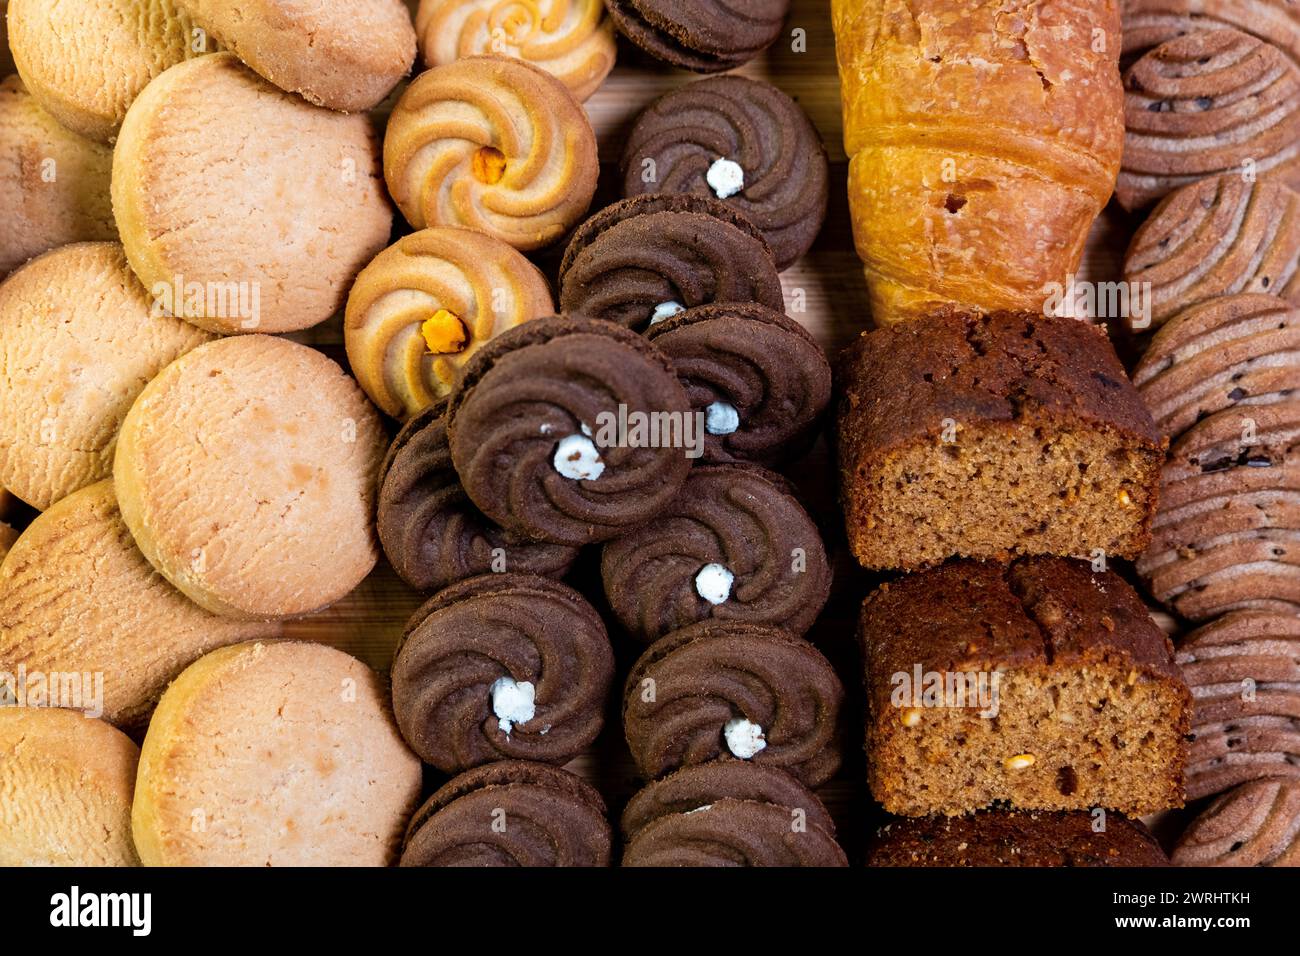 Cette image alléchante présente un assortiment alléchant de produits de boulangerie, disposés sur une planche de bois rustique pour une vue rapprochée ravissante. Banque D'Images